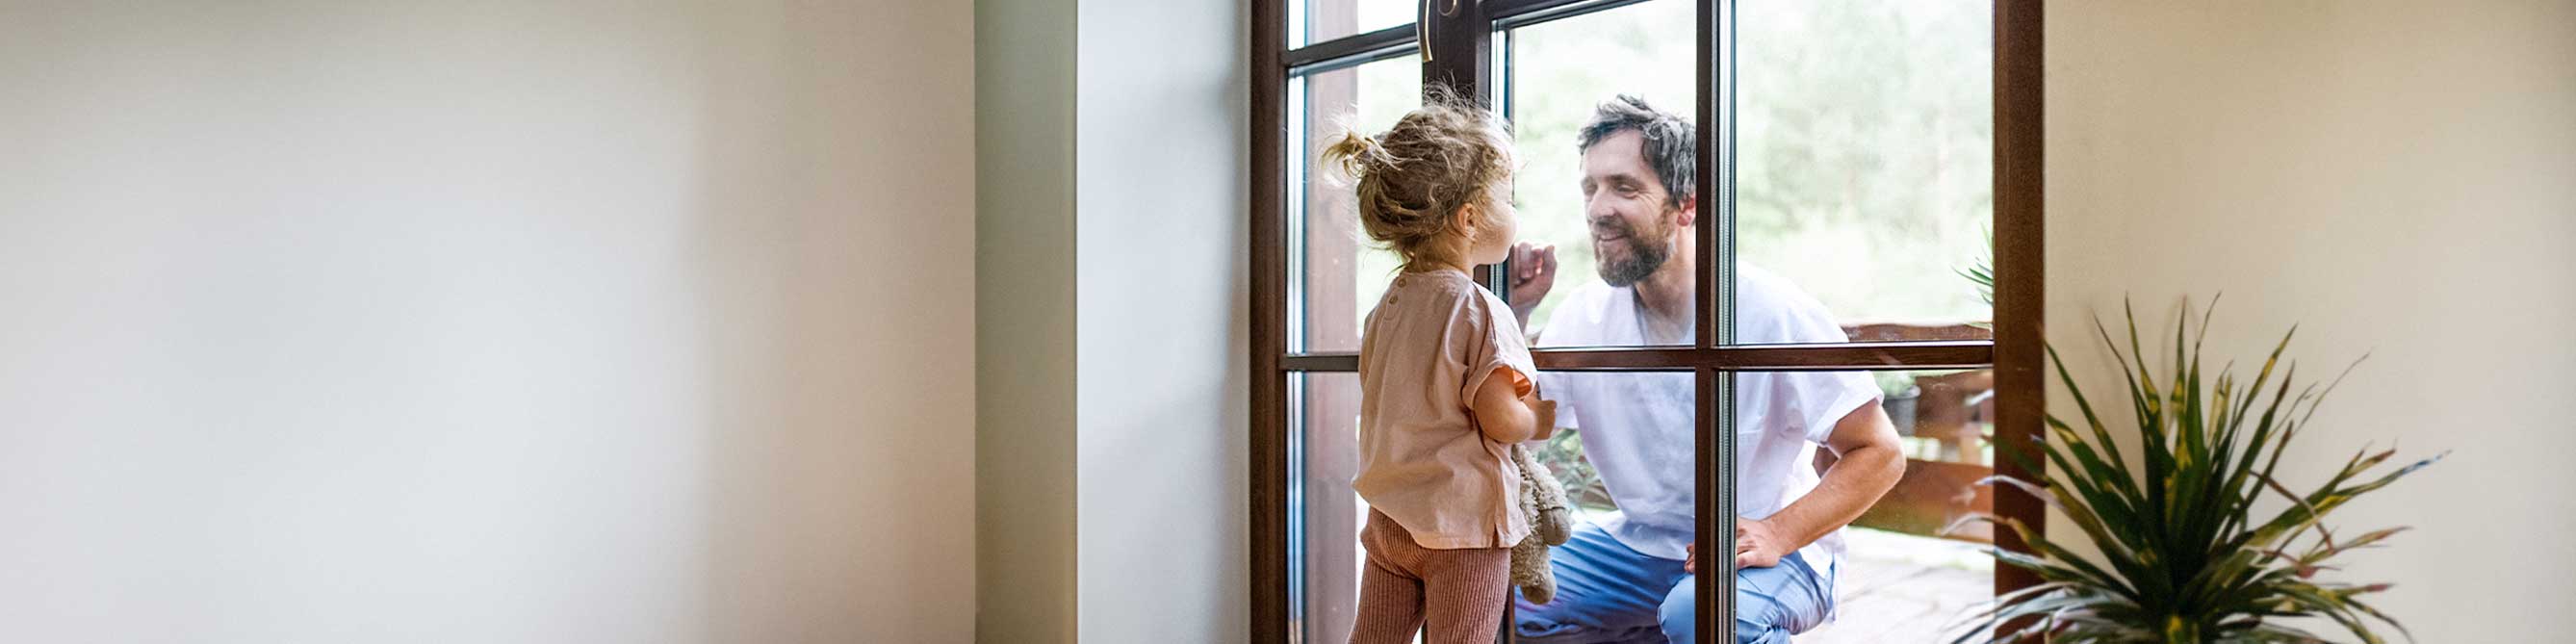 Vater und kleine Tochter schauen sich durch Fensterscheibe an und lächeln